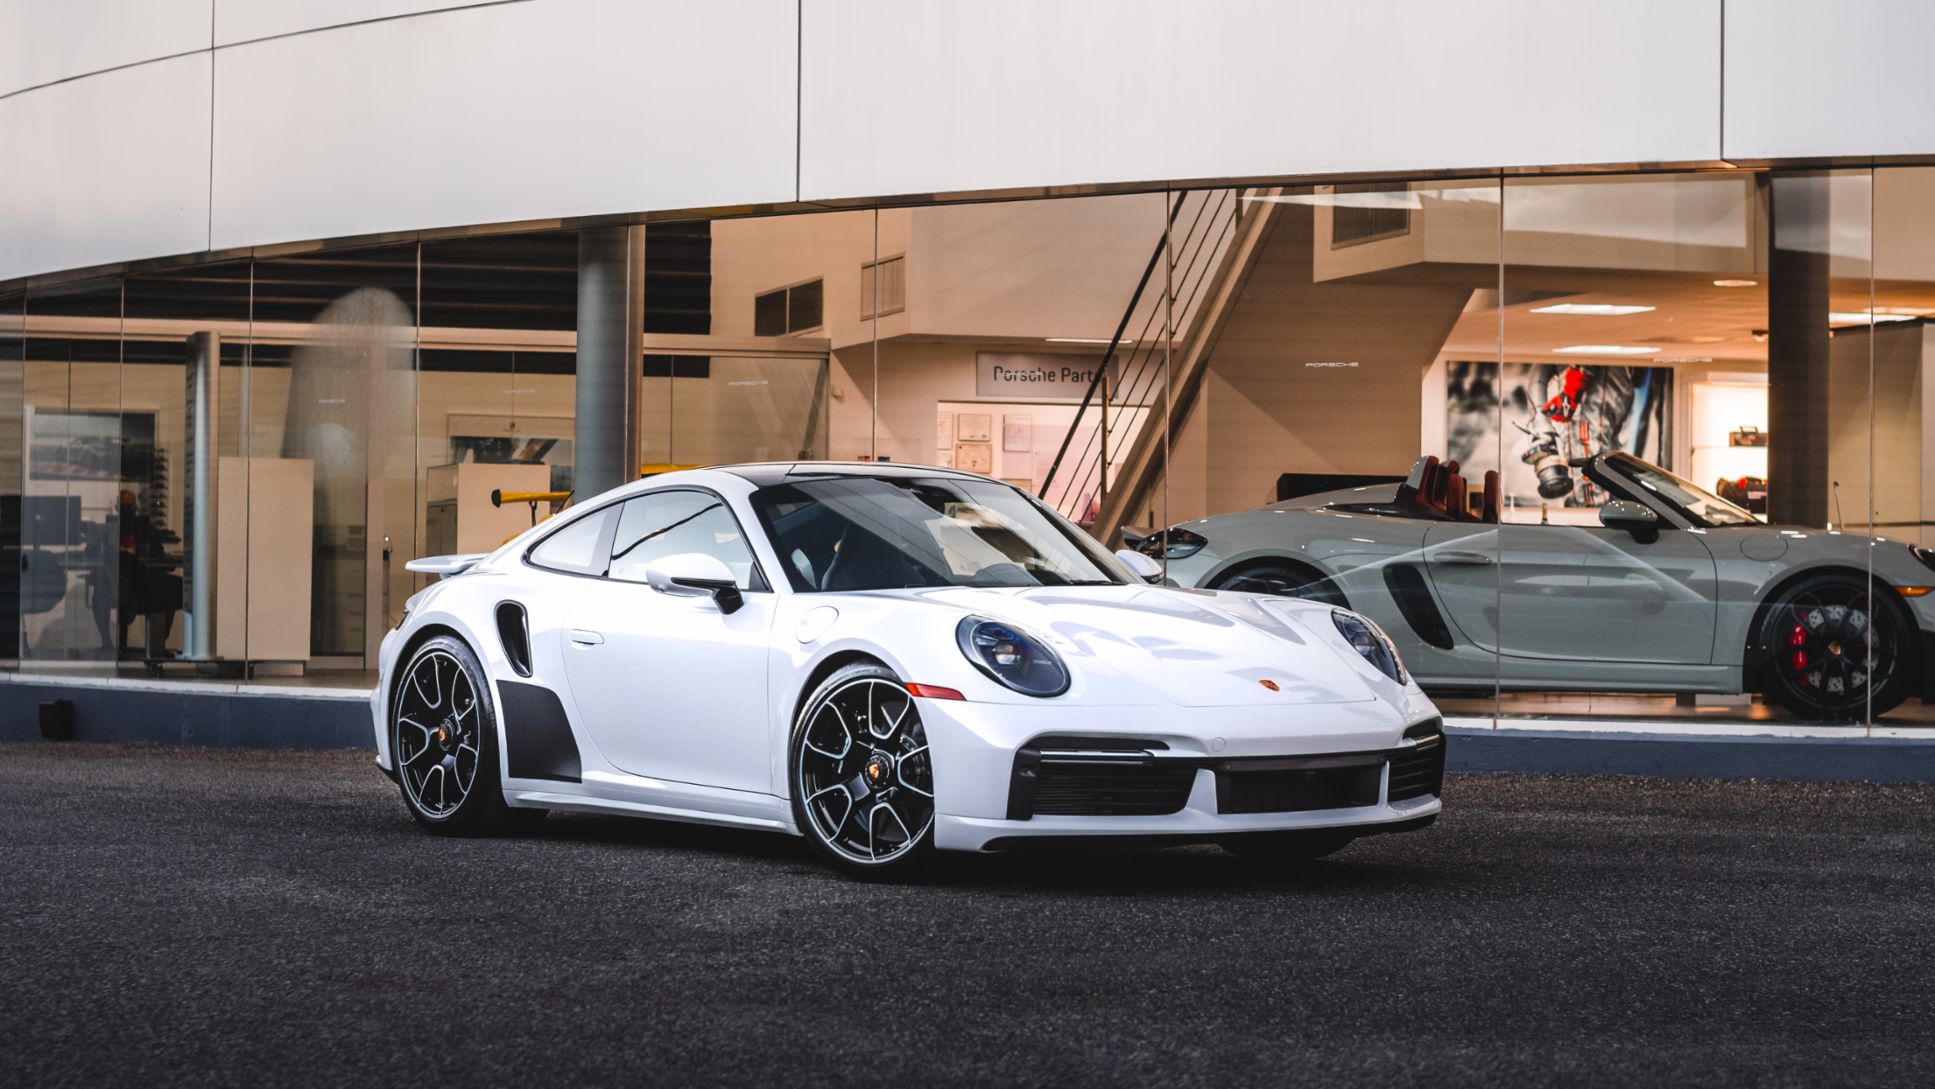 Porsche continúa su historia presentando en Puerto Rico el nuevo 911 Turbo